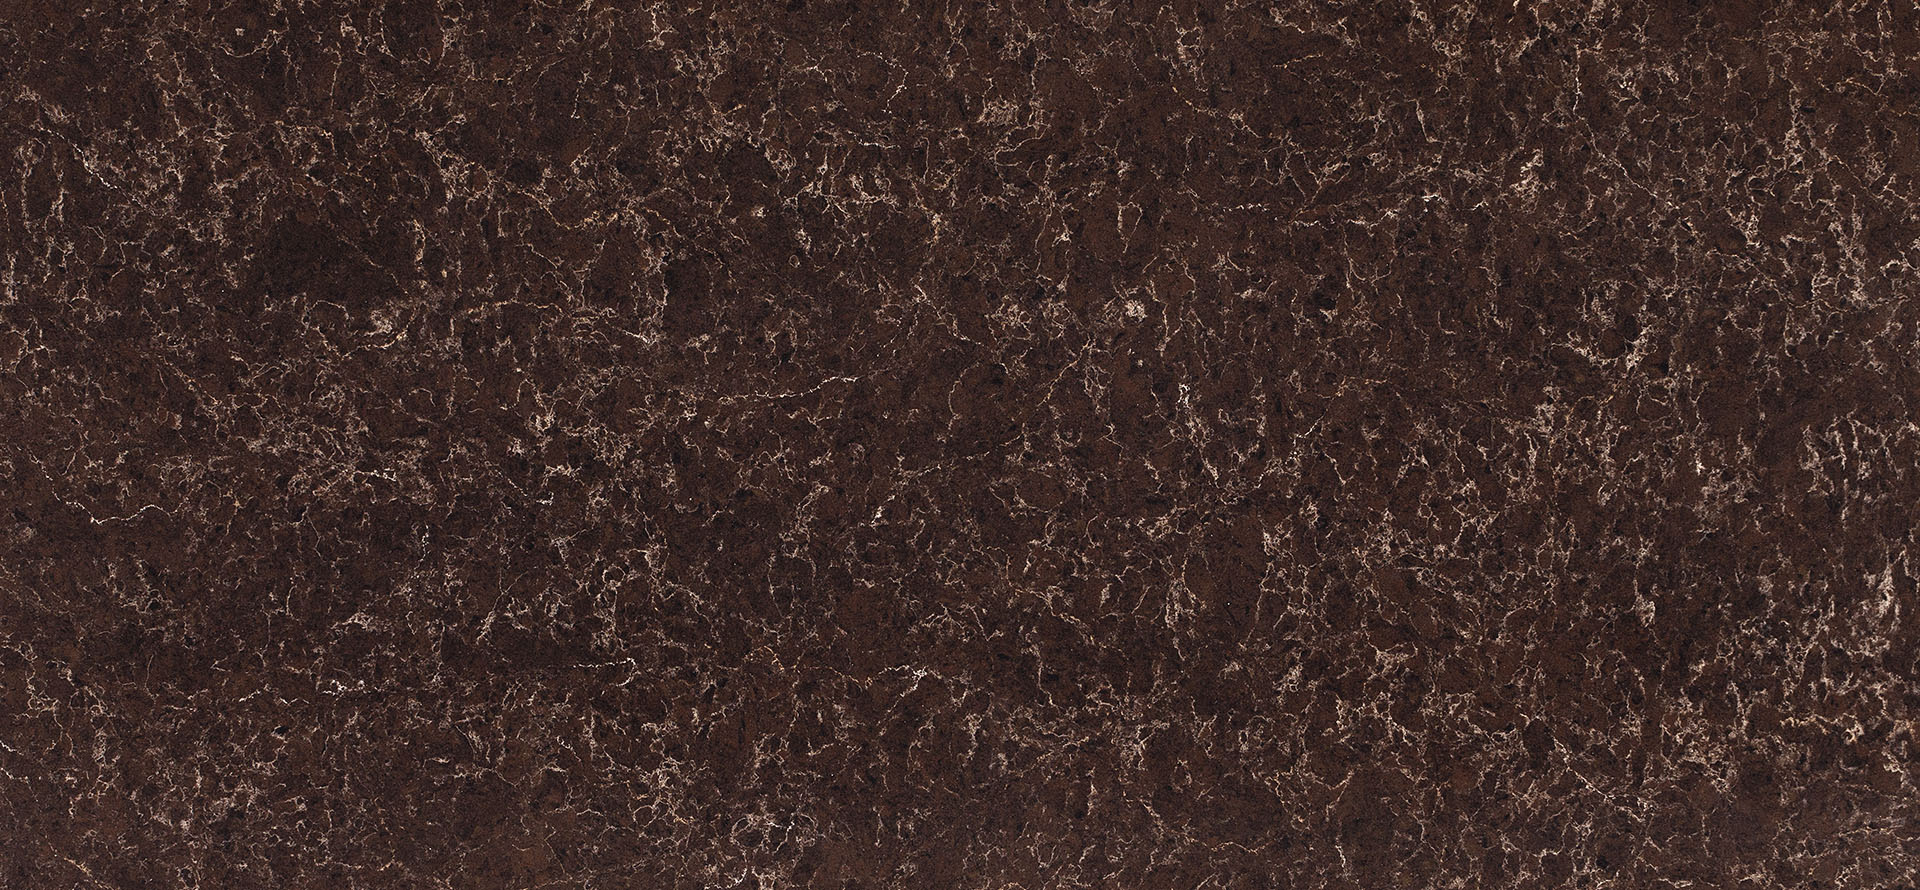 squarerooms-caesarstone-slab-surface-marble-quartz-brown-dark